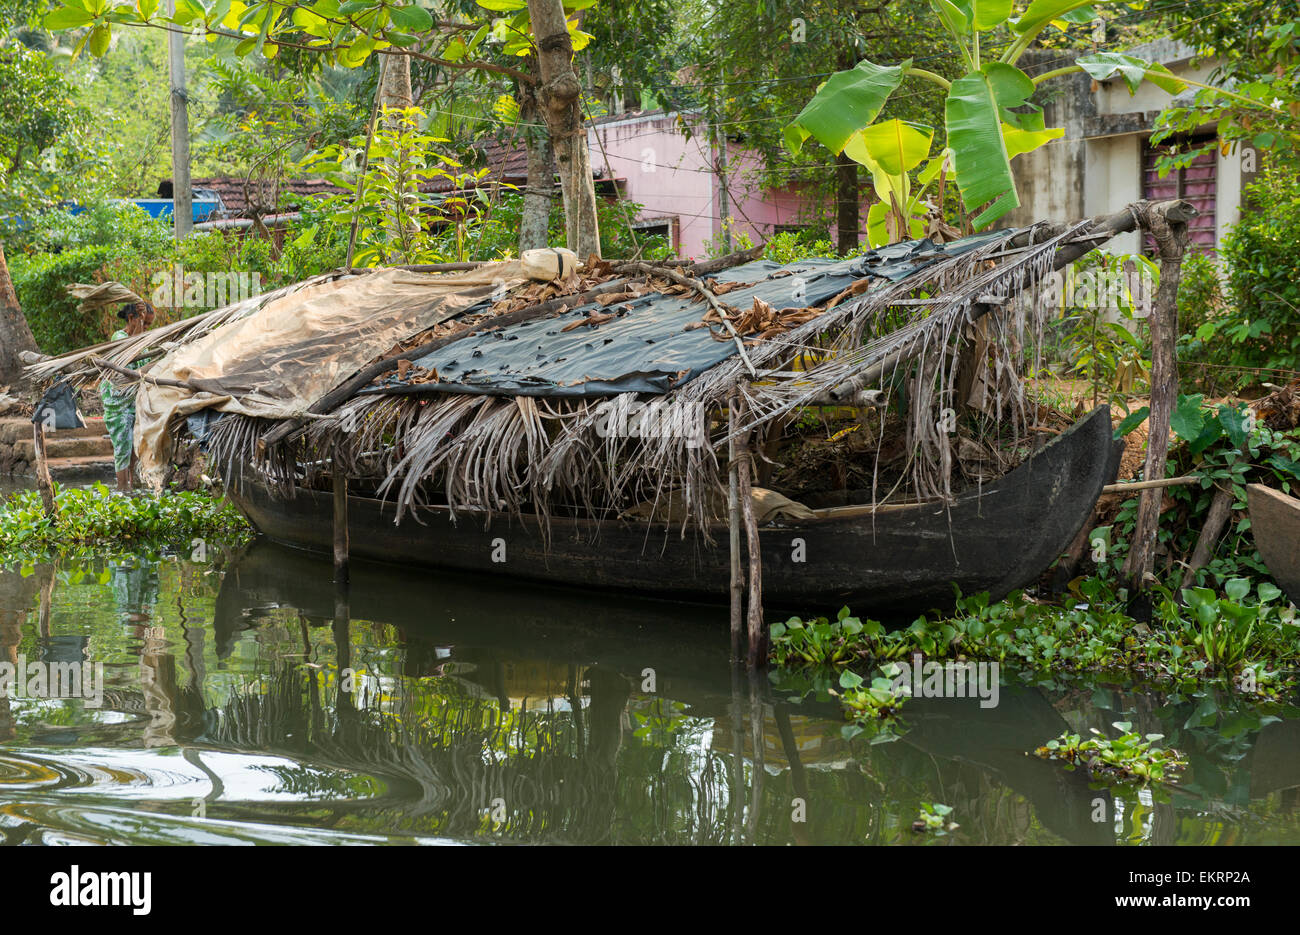 Un bateau couvert de la chaleur dans les eaux troubles de Kumarakom, Kerala Inde Banque D'Images